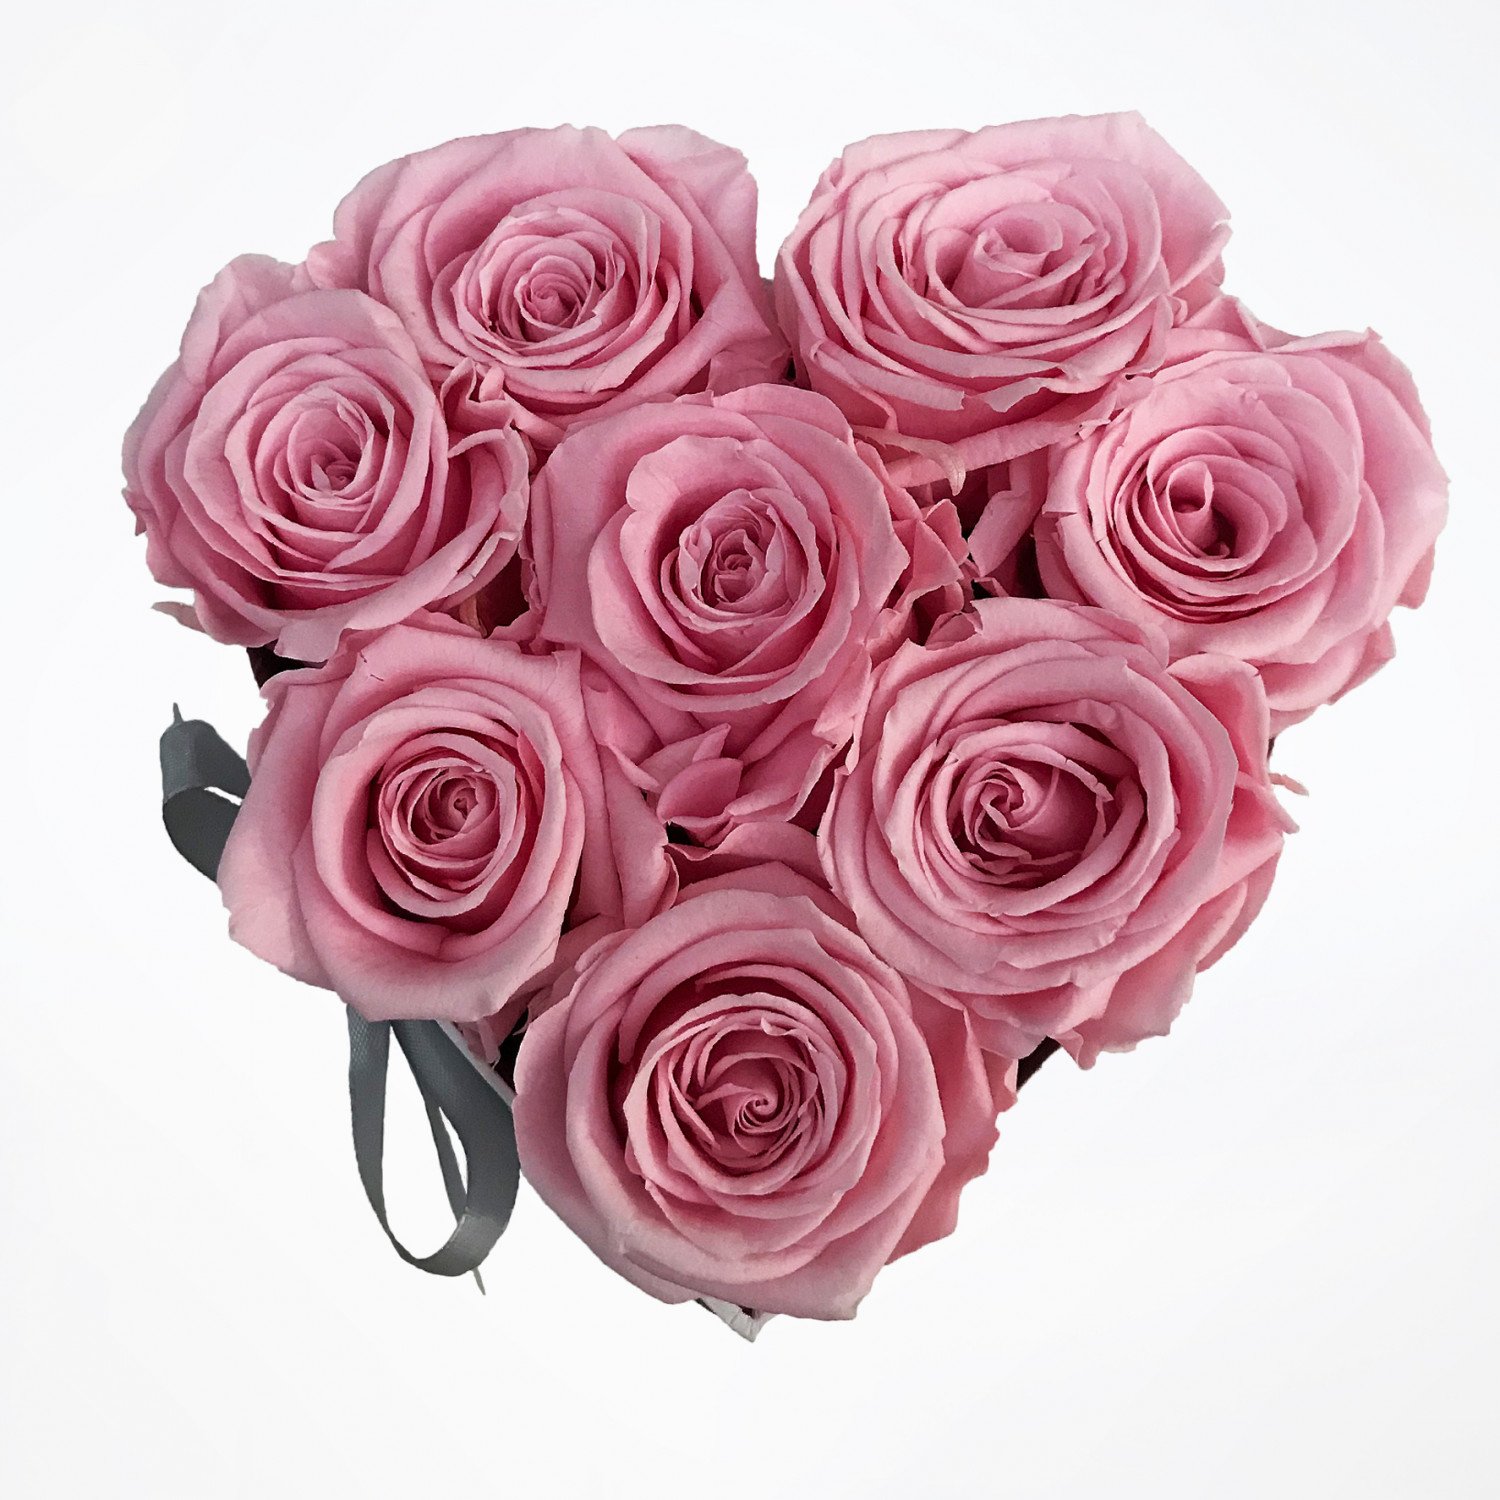 Herz Flowerbox small: Infinity rosa Rosen